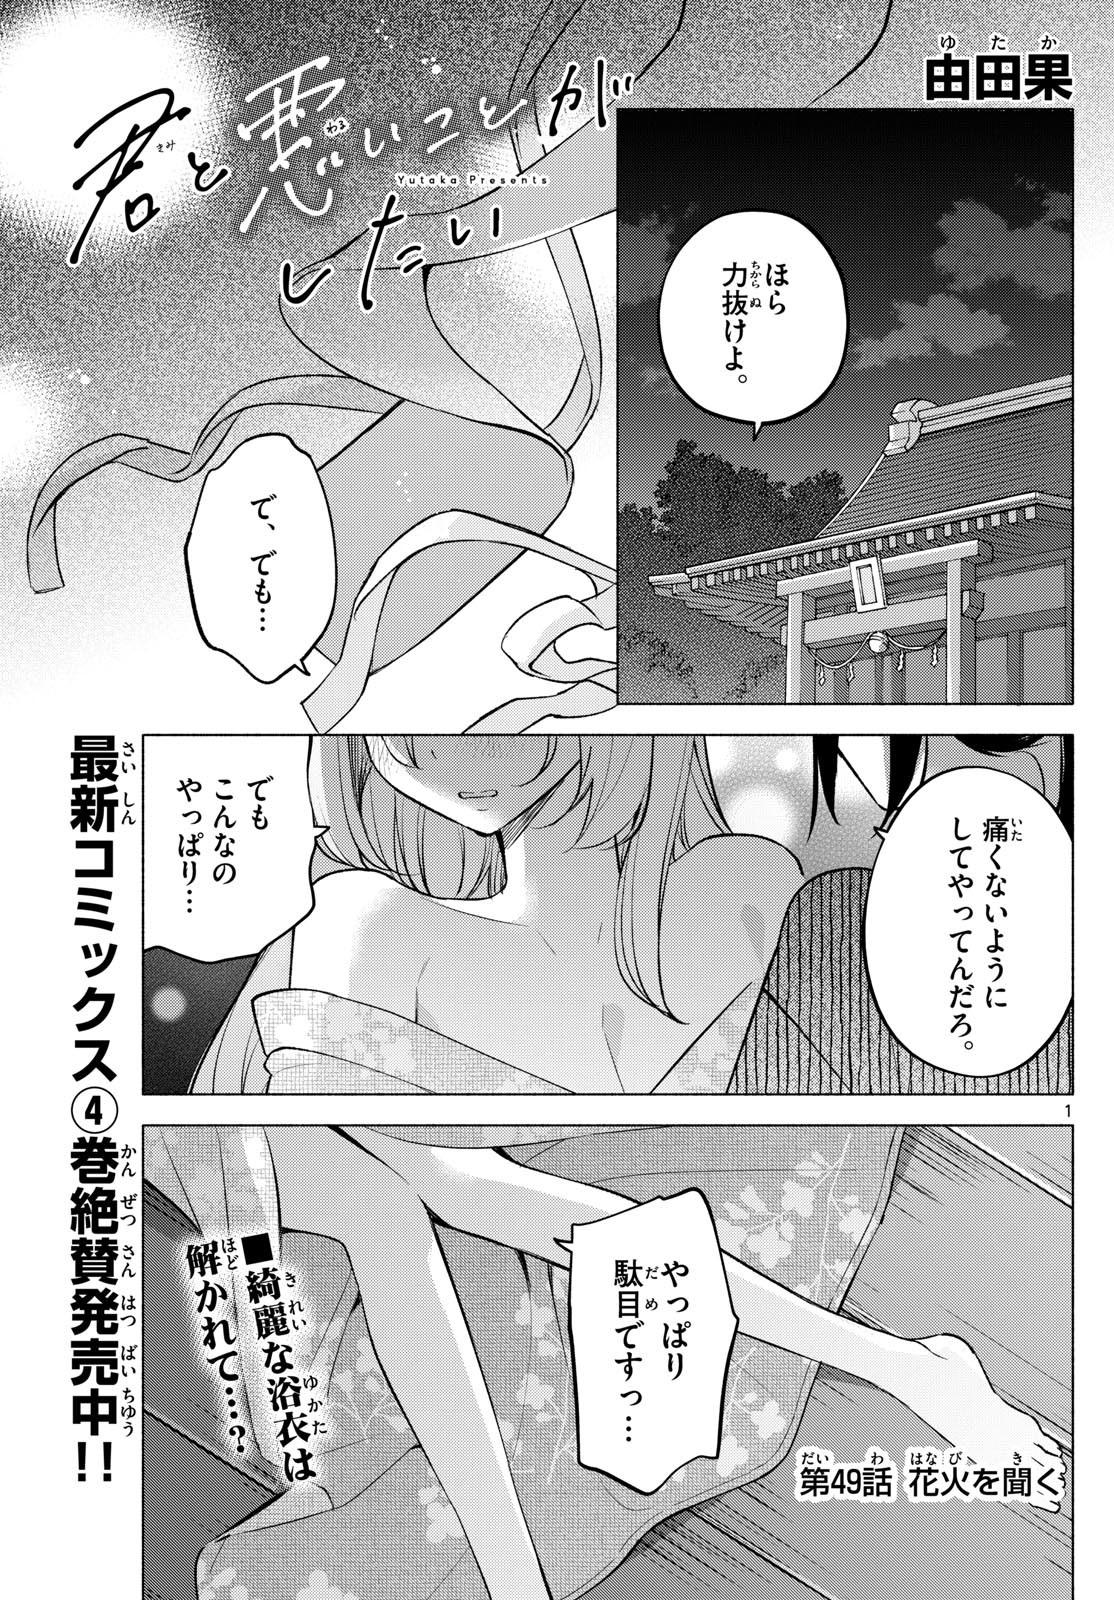 Kimi to Warui Koto ga Shitai - Chapter 049 - Page 1